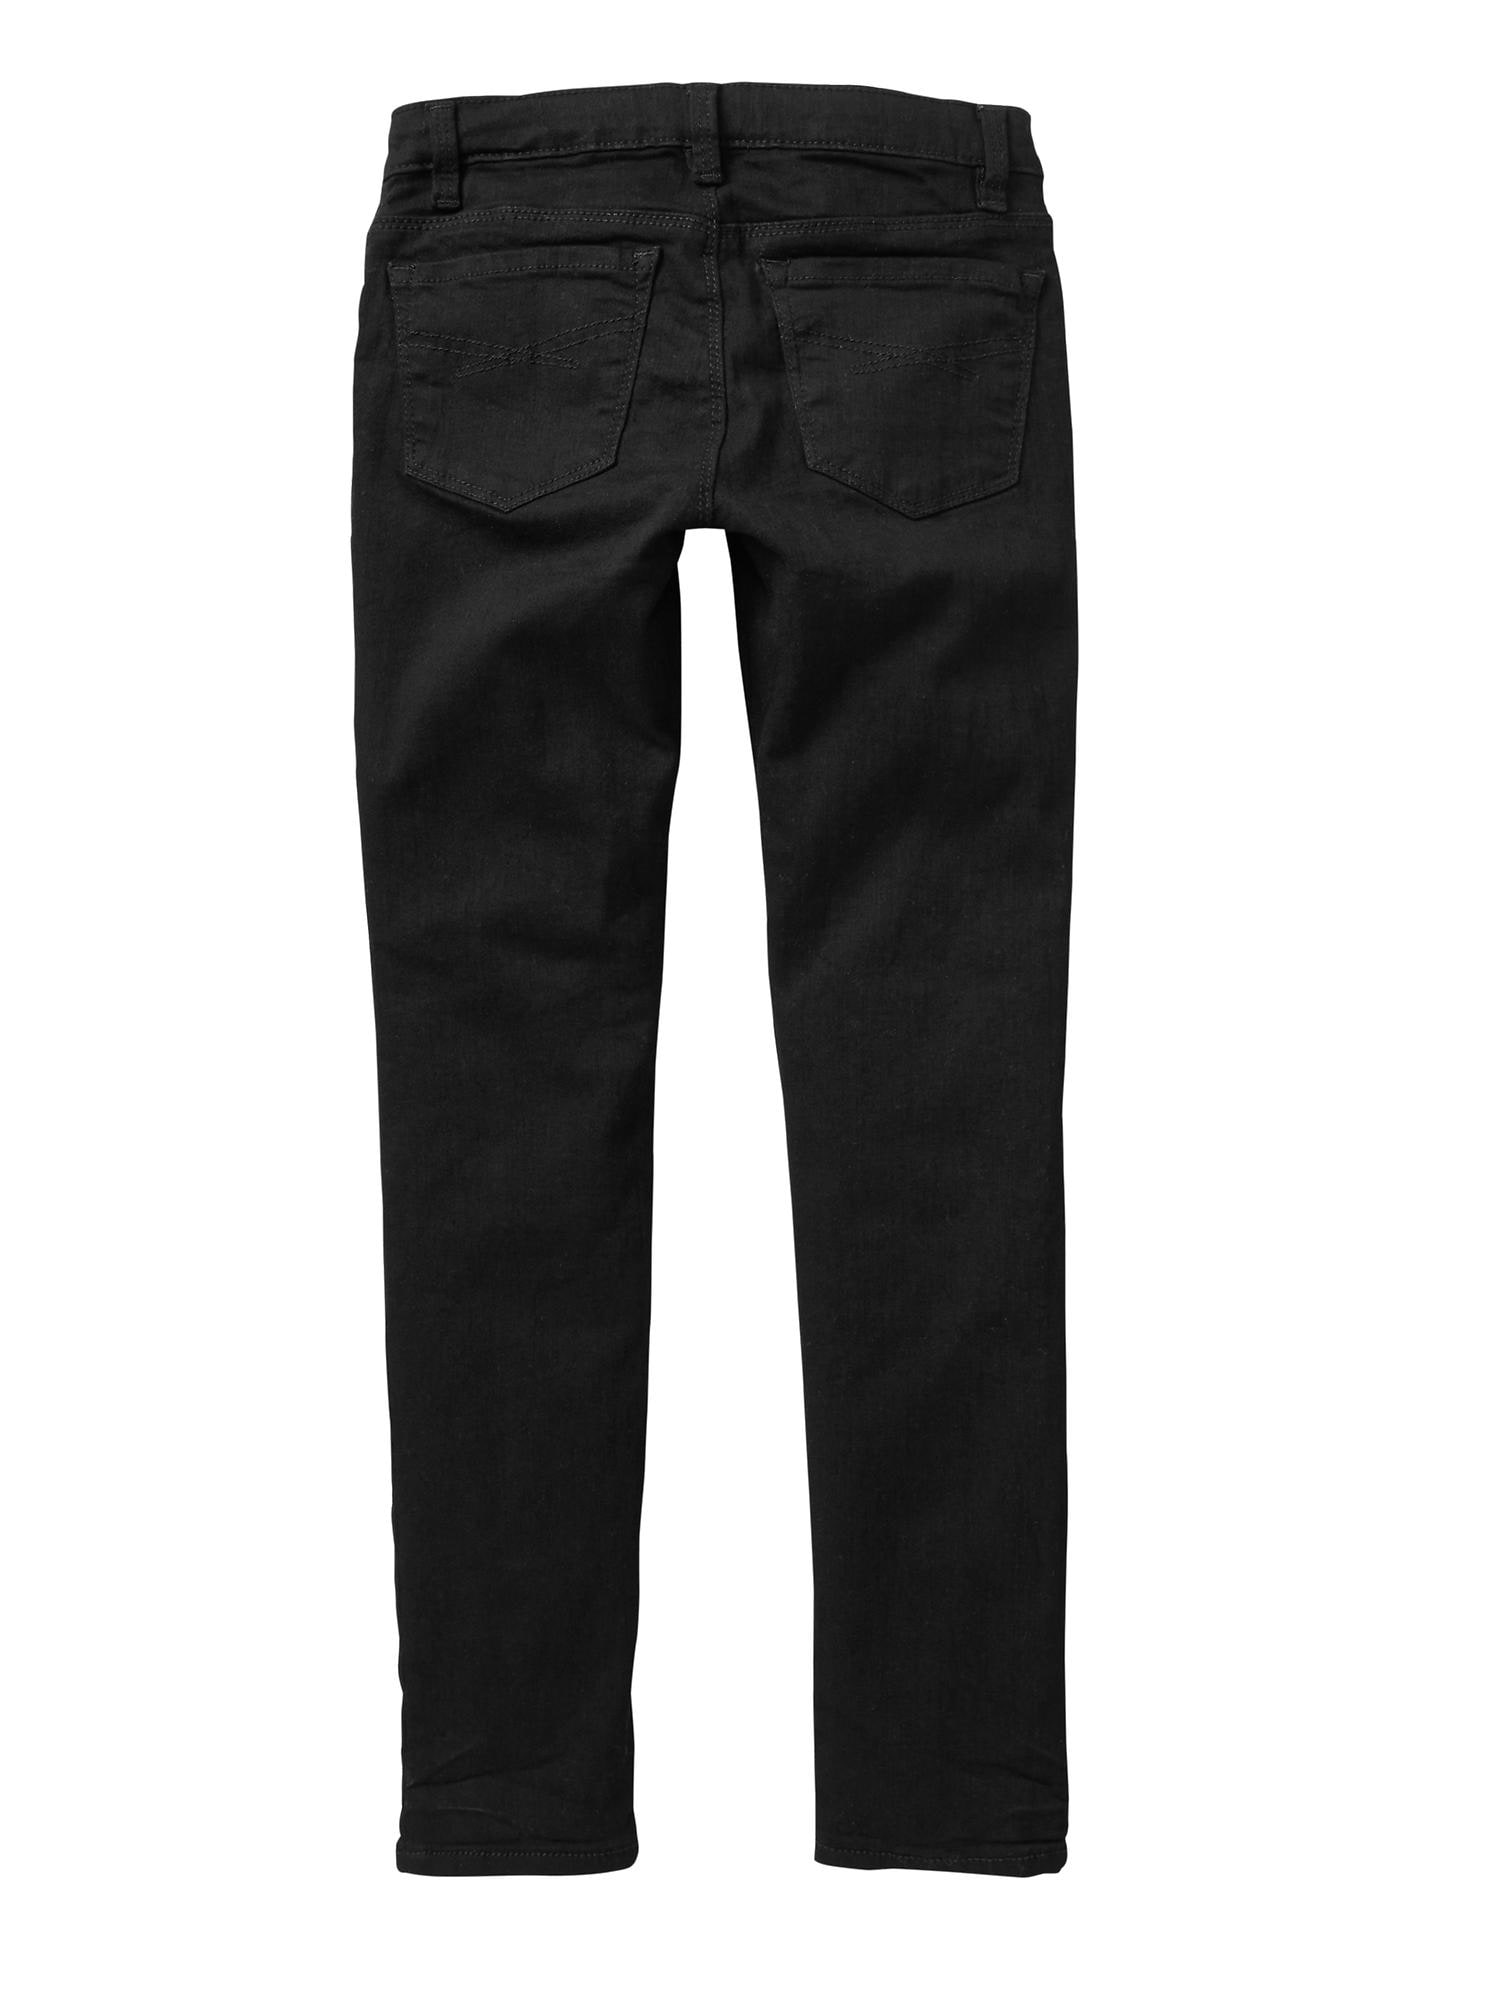 snijden Vertrek Onmiddellijk Kids Super Skinny Jeans with Washwell | Gap Factory